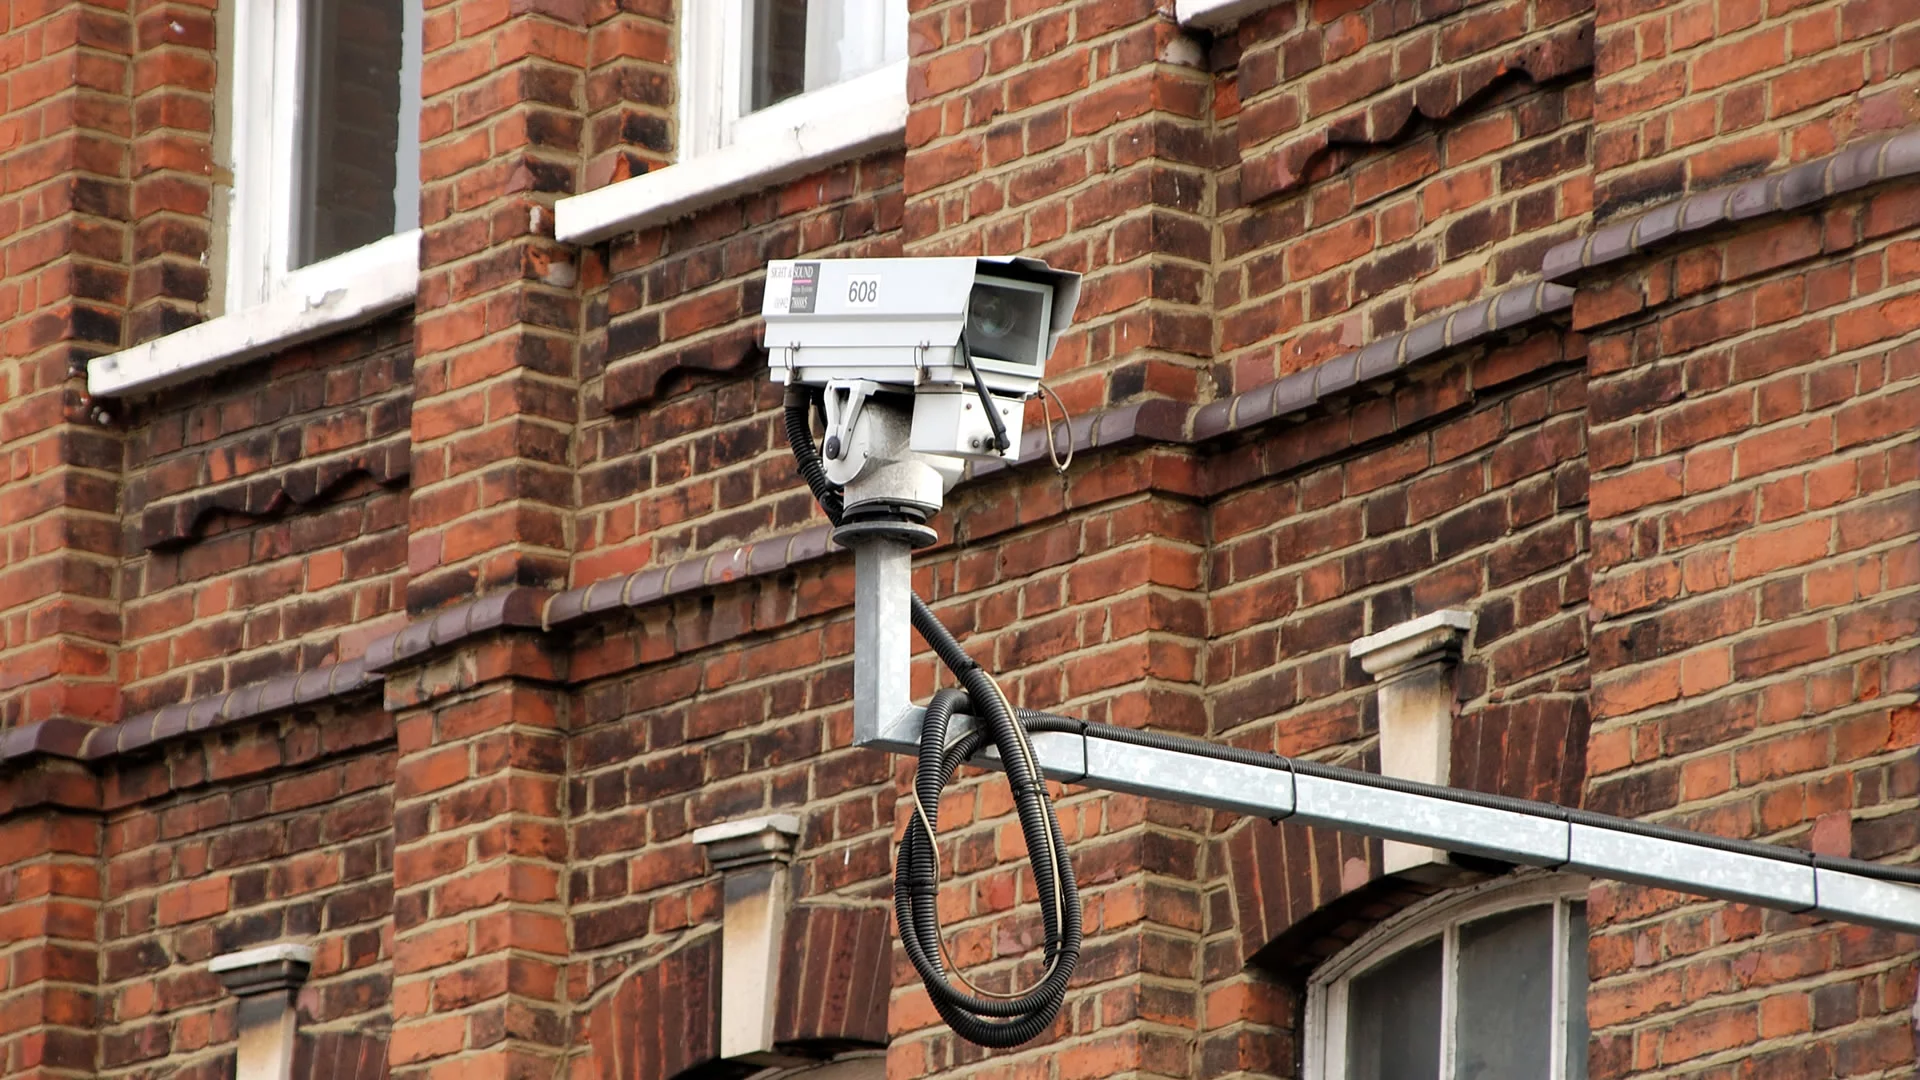 Videoüberwachungskameras in London zur Verhütung des Terrorismus